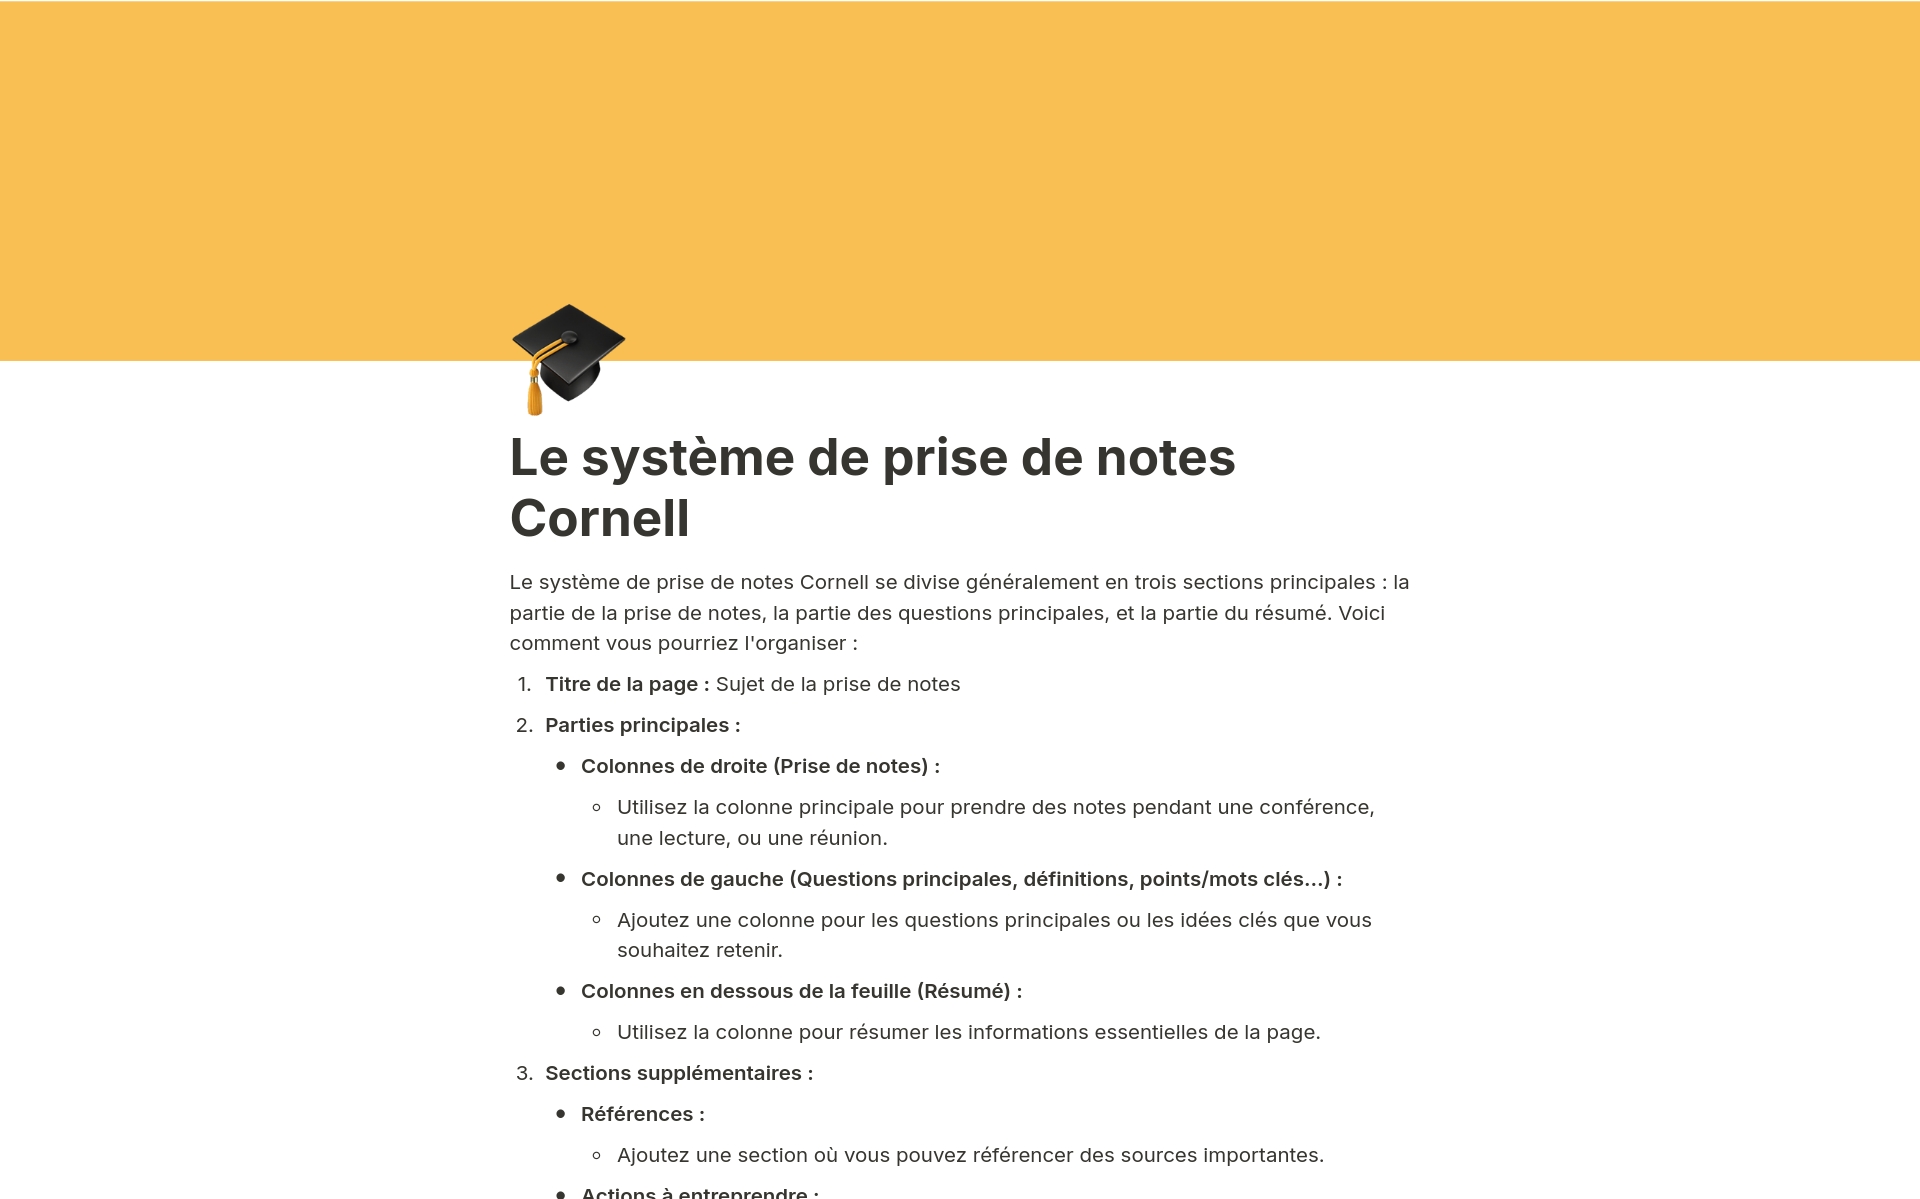 A template preview for Le système de prise de notes Cornell